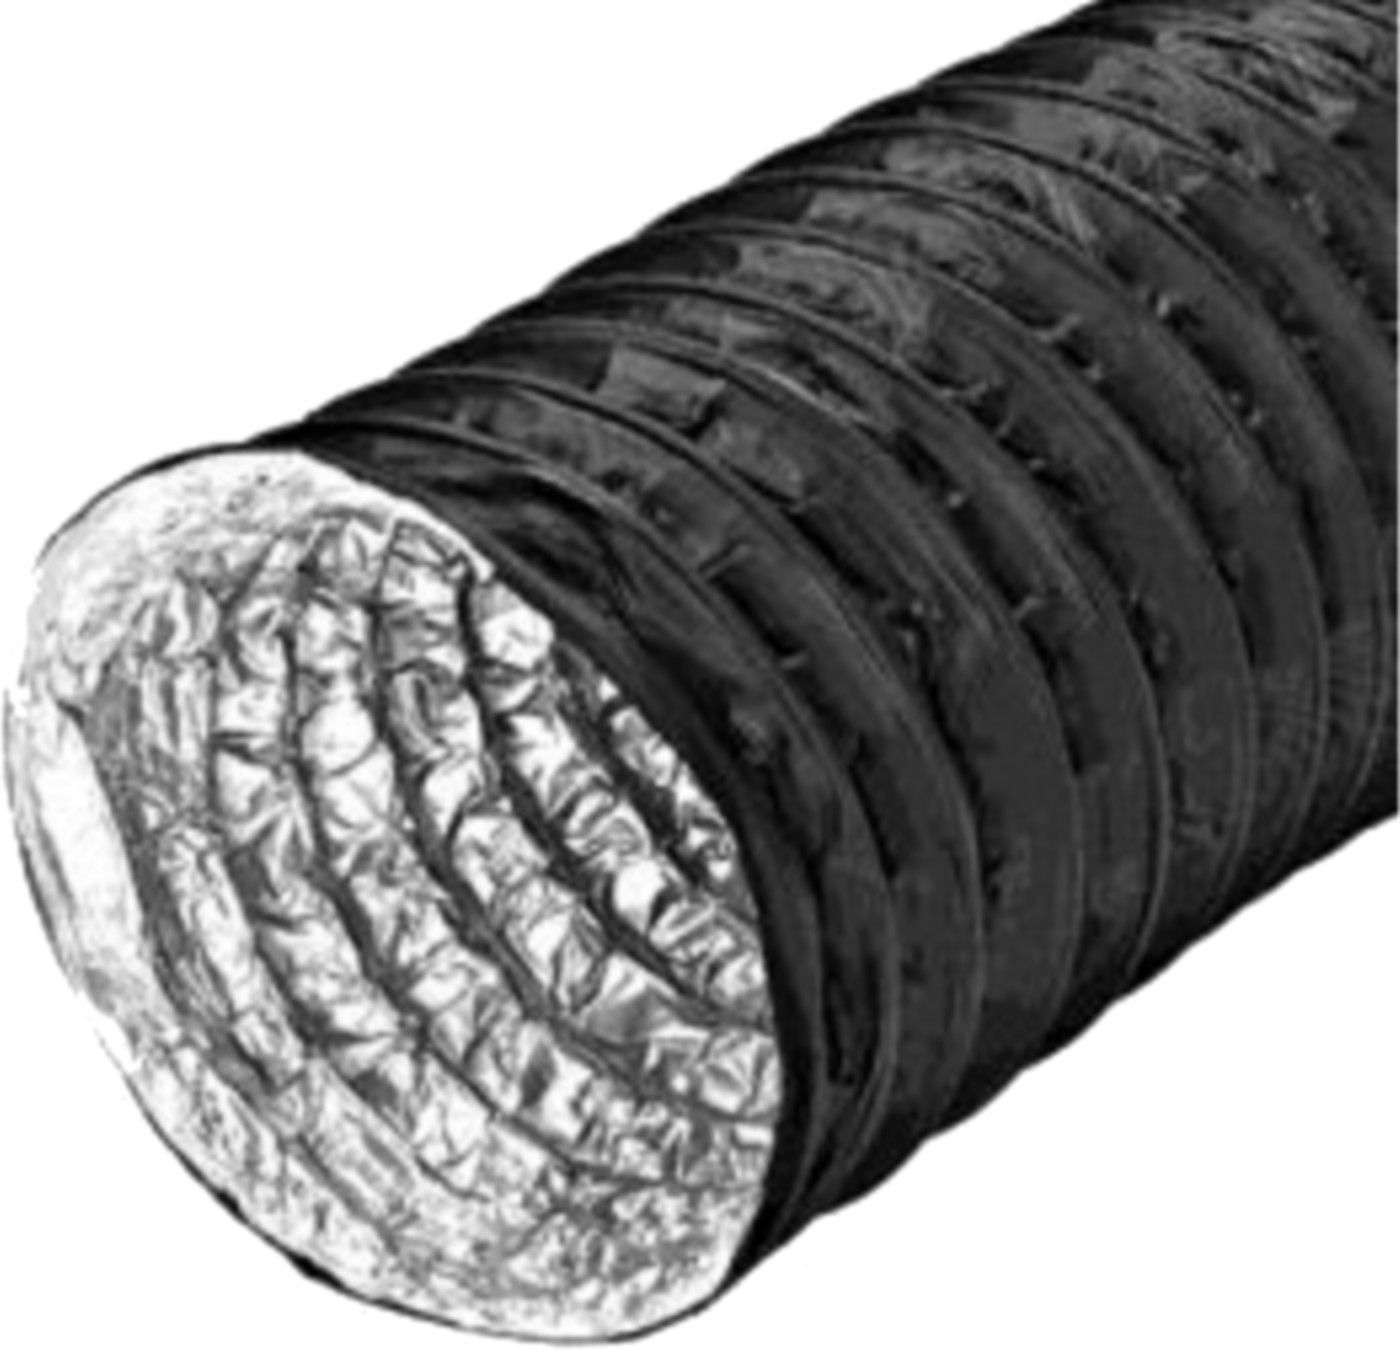 Combidec 2300 schwarz L= 10 m 300 mm hochflexibler Aluminium-Lüftungsschlauch - Flexible Lüftungsschläuche